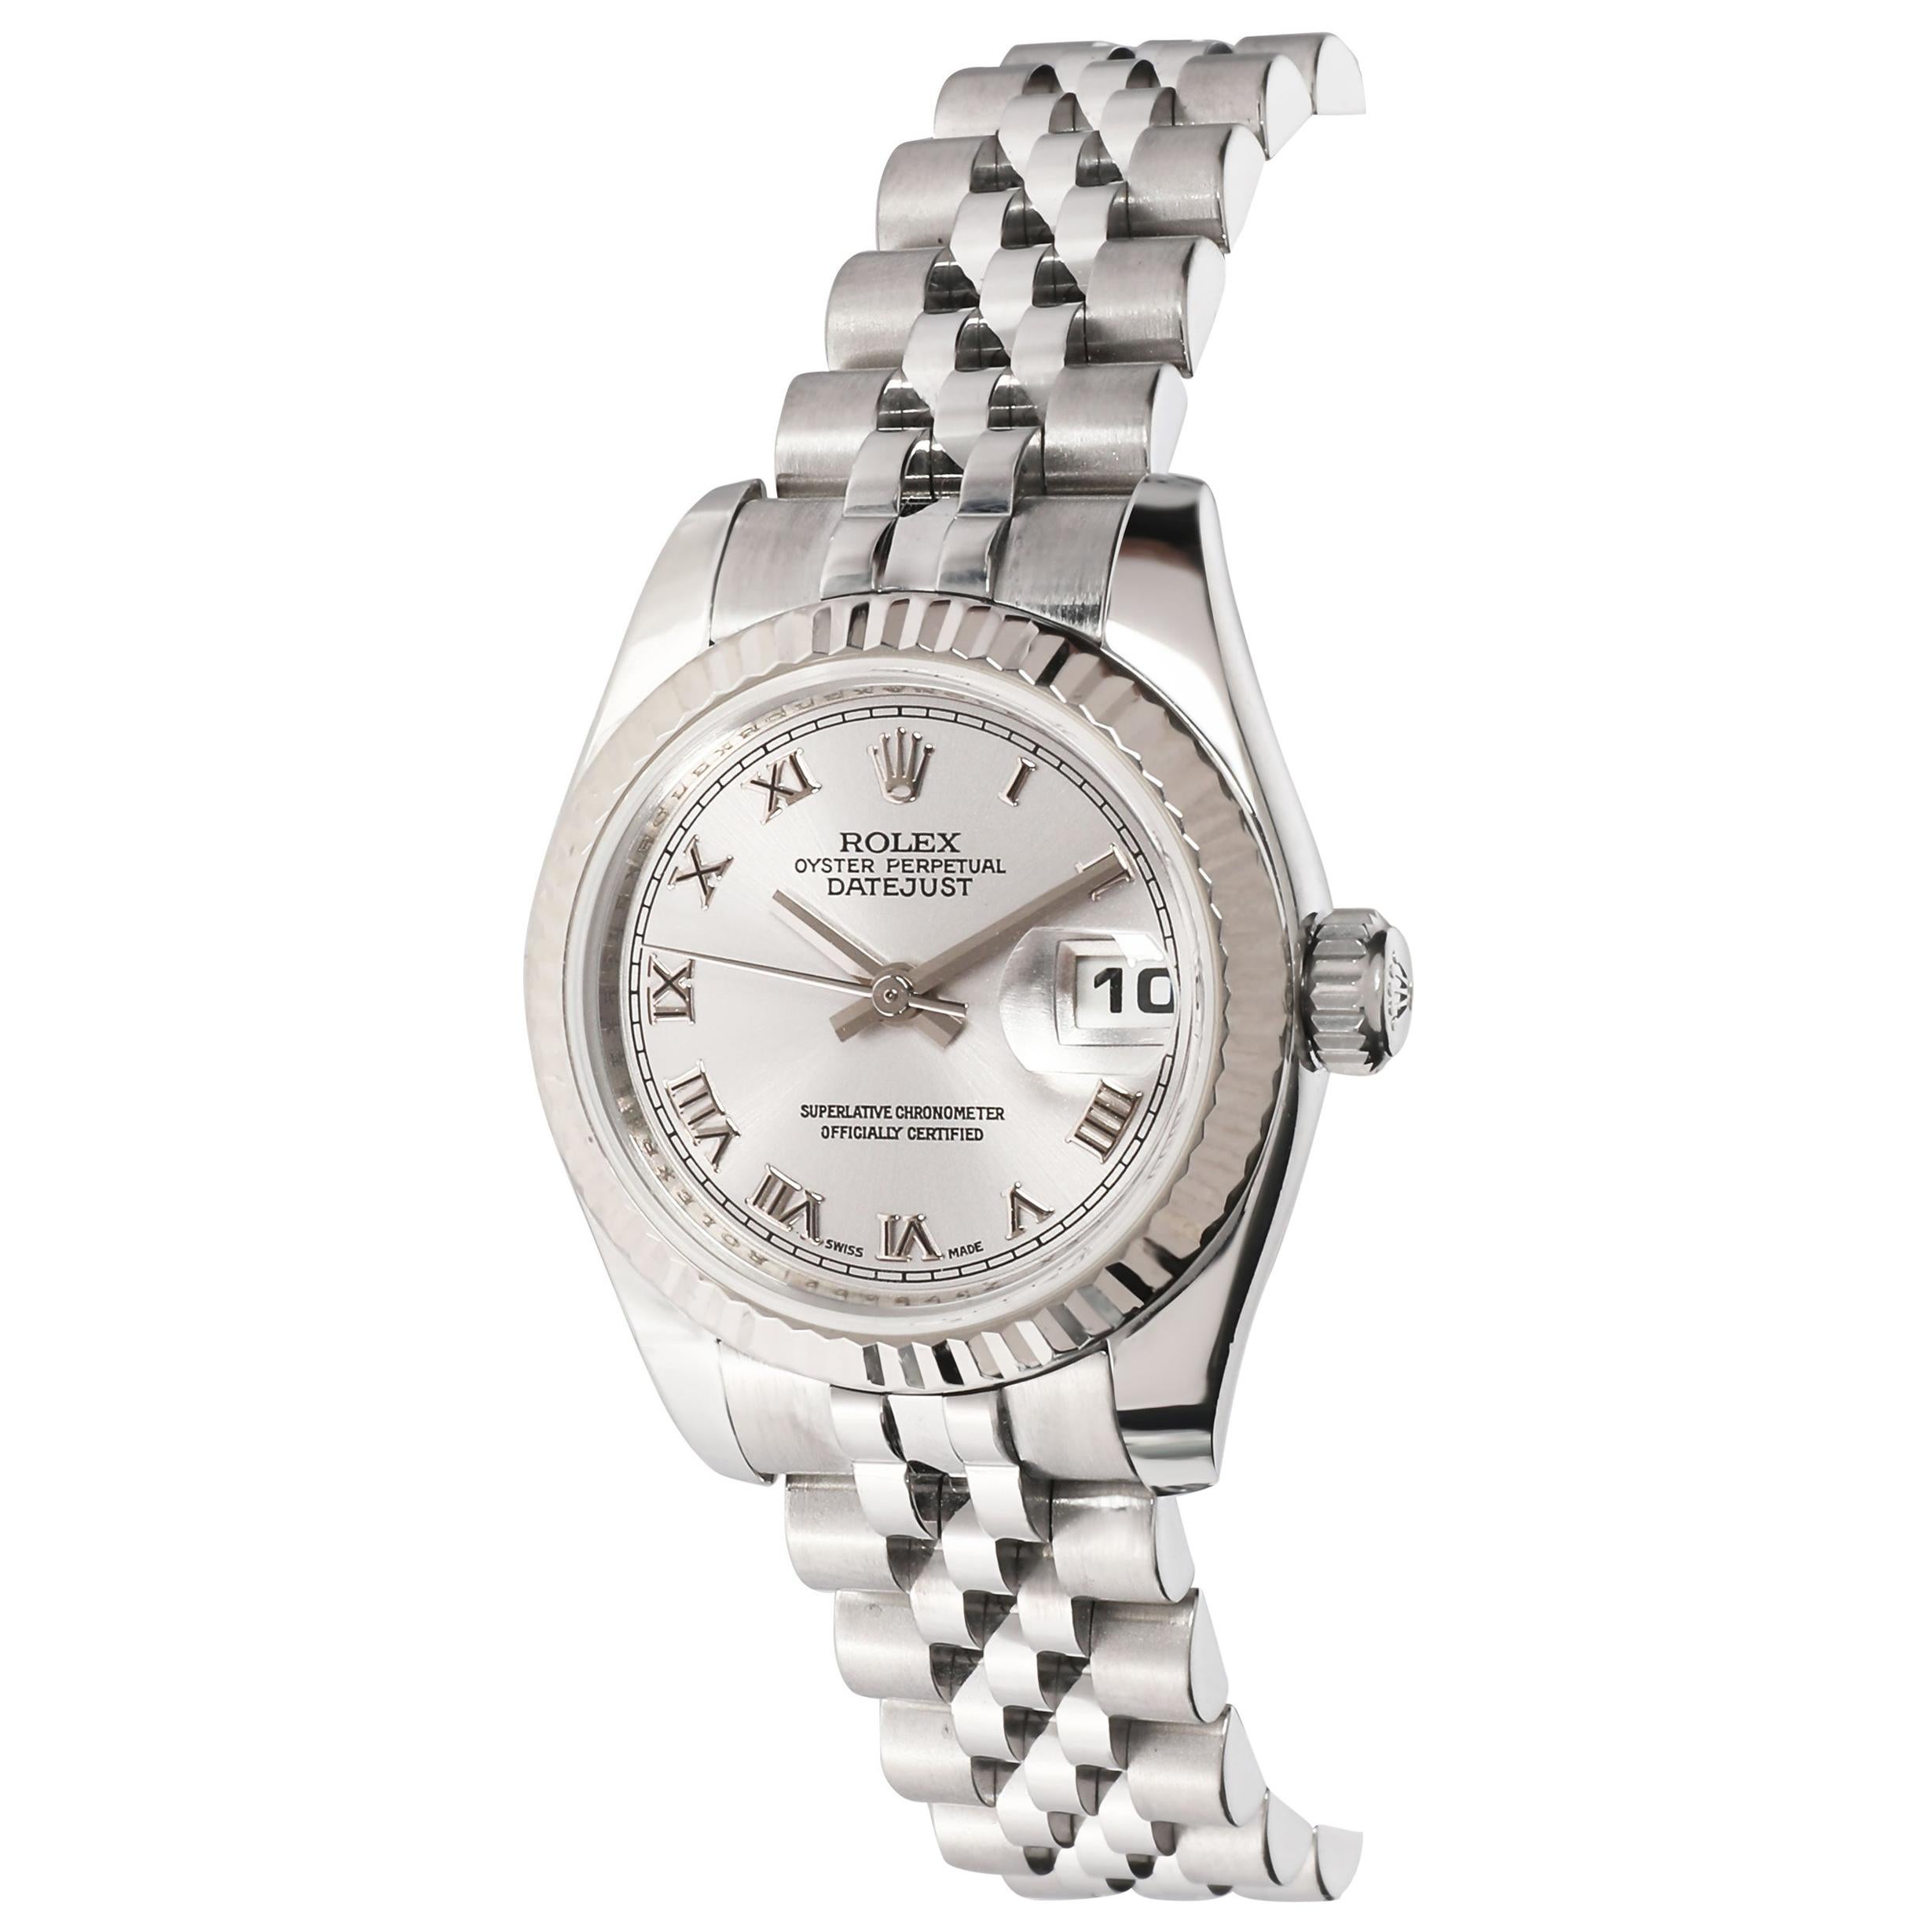 Rolex Datejust 179174 Women's Watch in 18 Karat Stainless Steel/White Gold